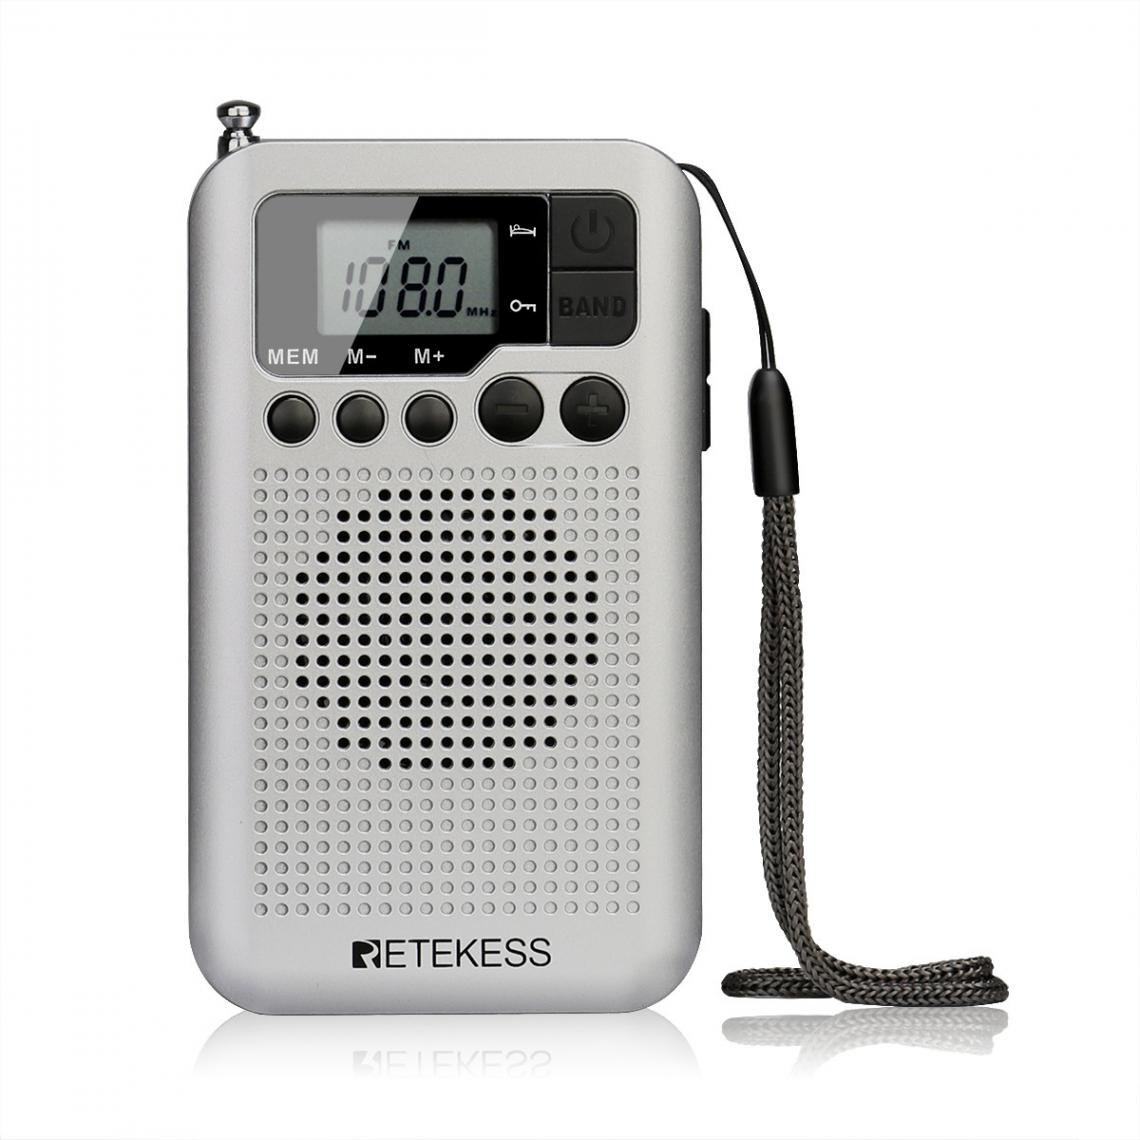 Universal - Radio FM/AM portative avec écran LCD, haut-parleur réglé numériquement, prise casque et support horloge(blanche) - Radio